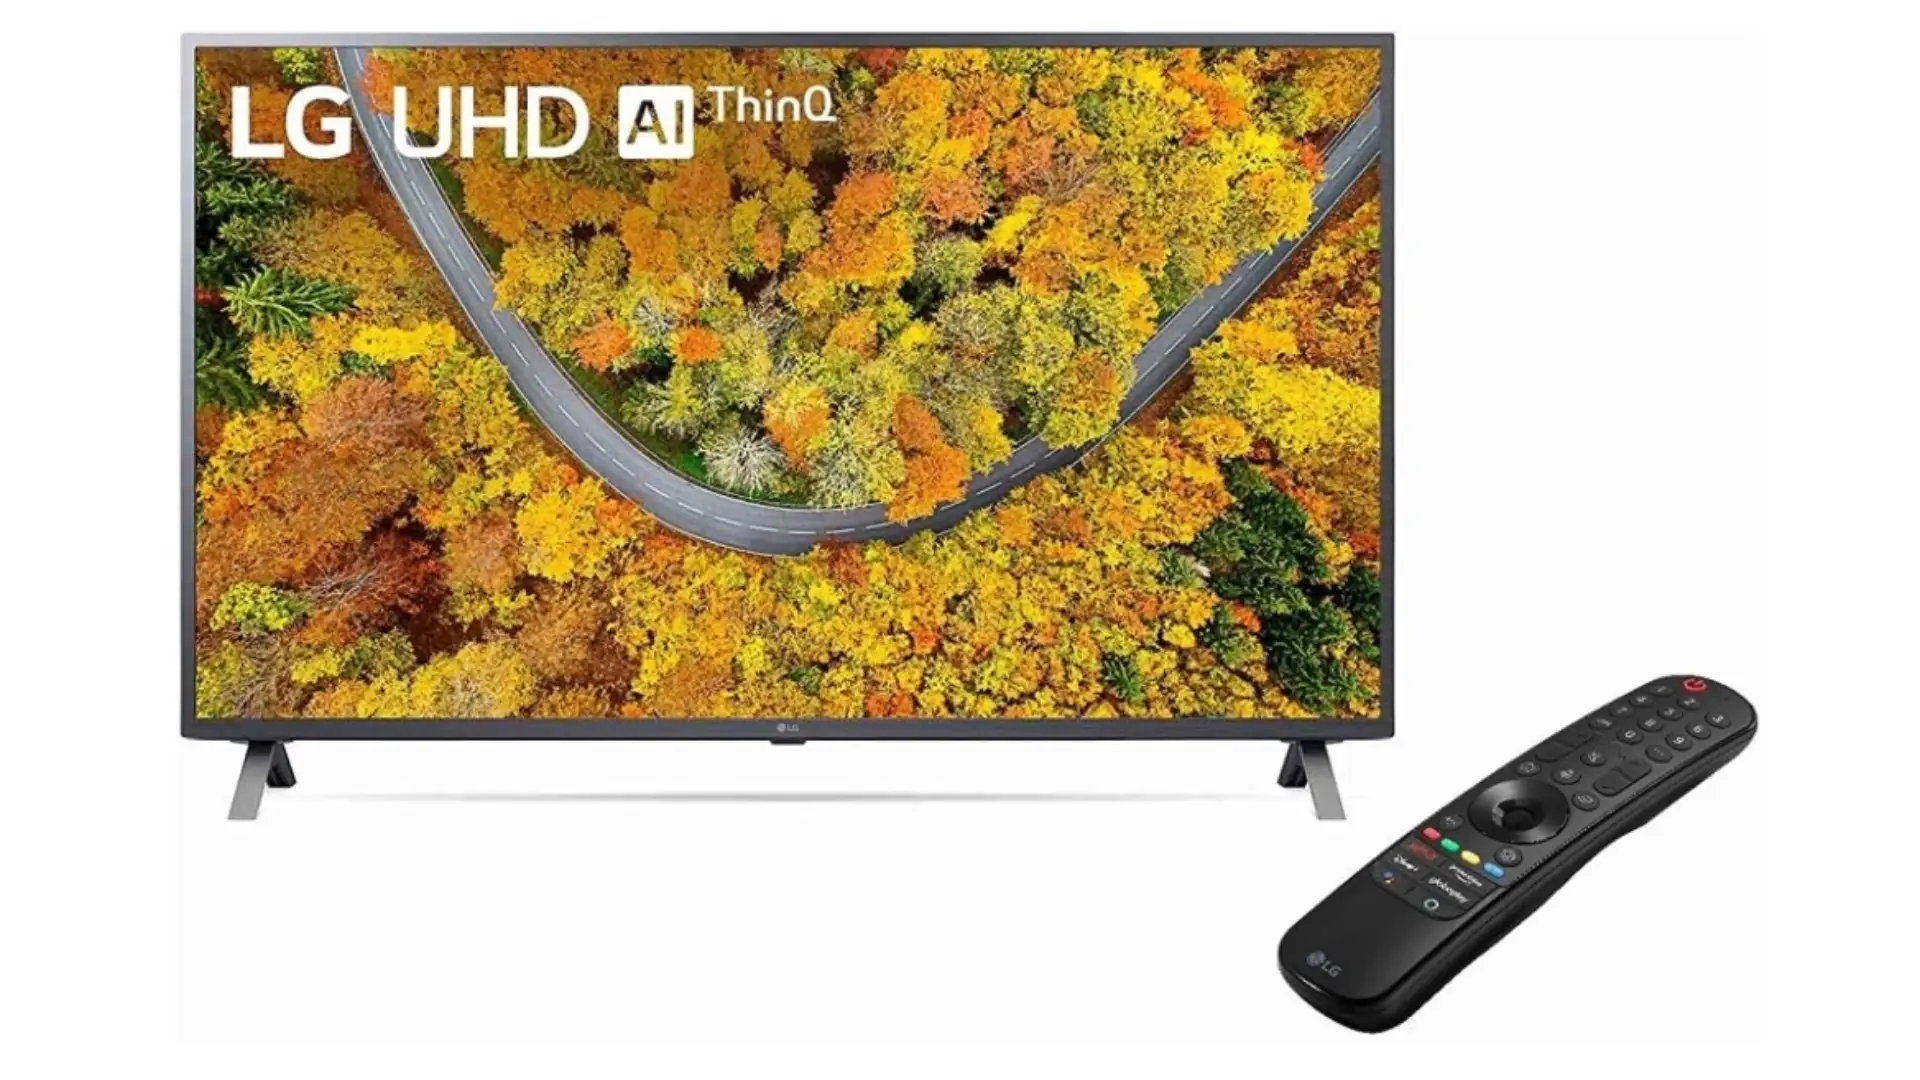 Foto com fundo branco da smart TV LG UP751C ao lado de seu controle remoto Smart Magic.